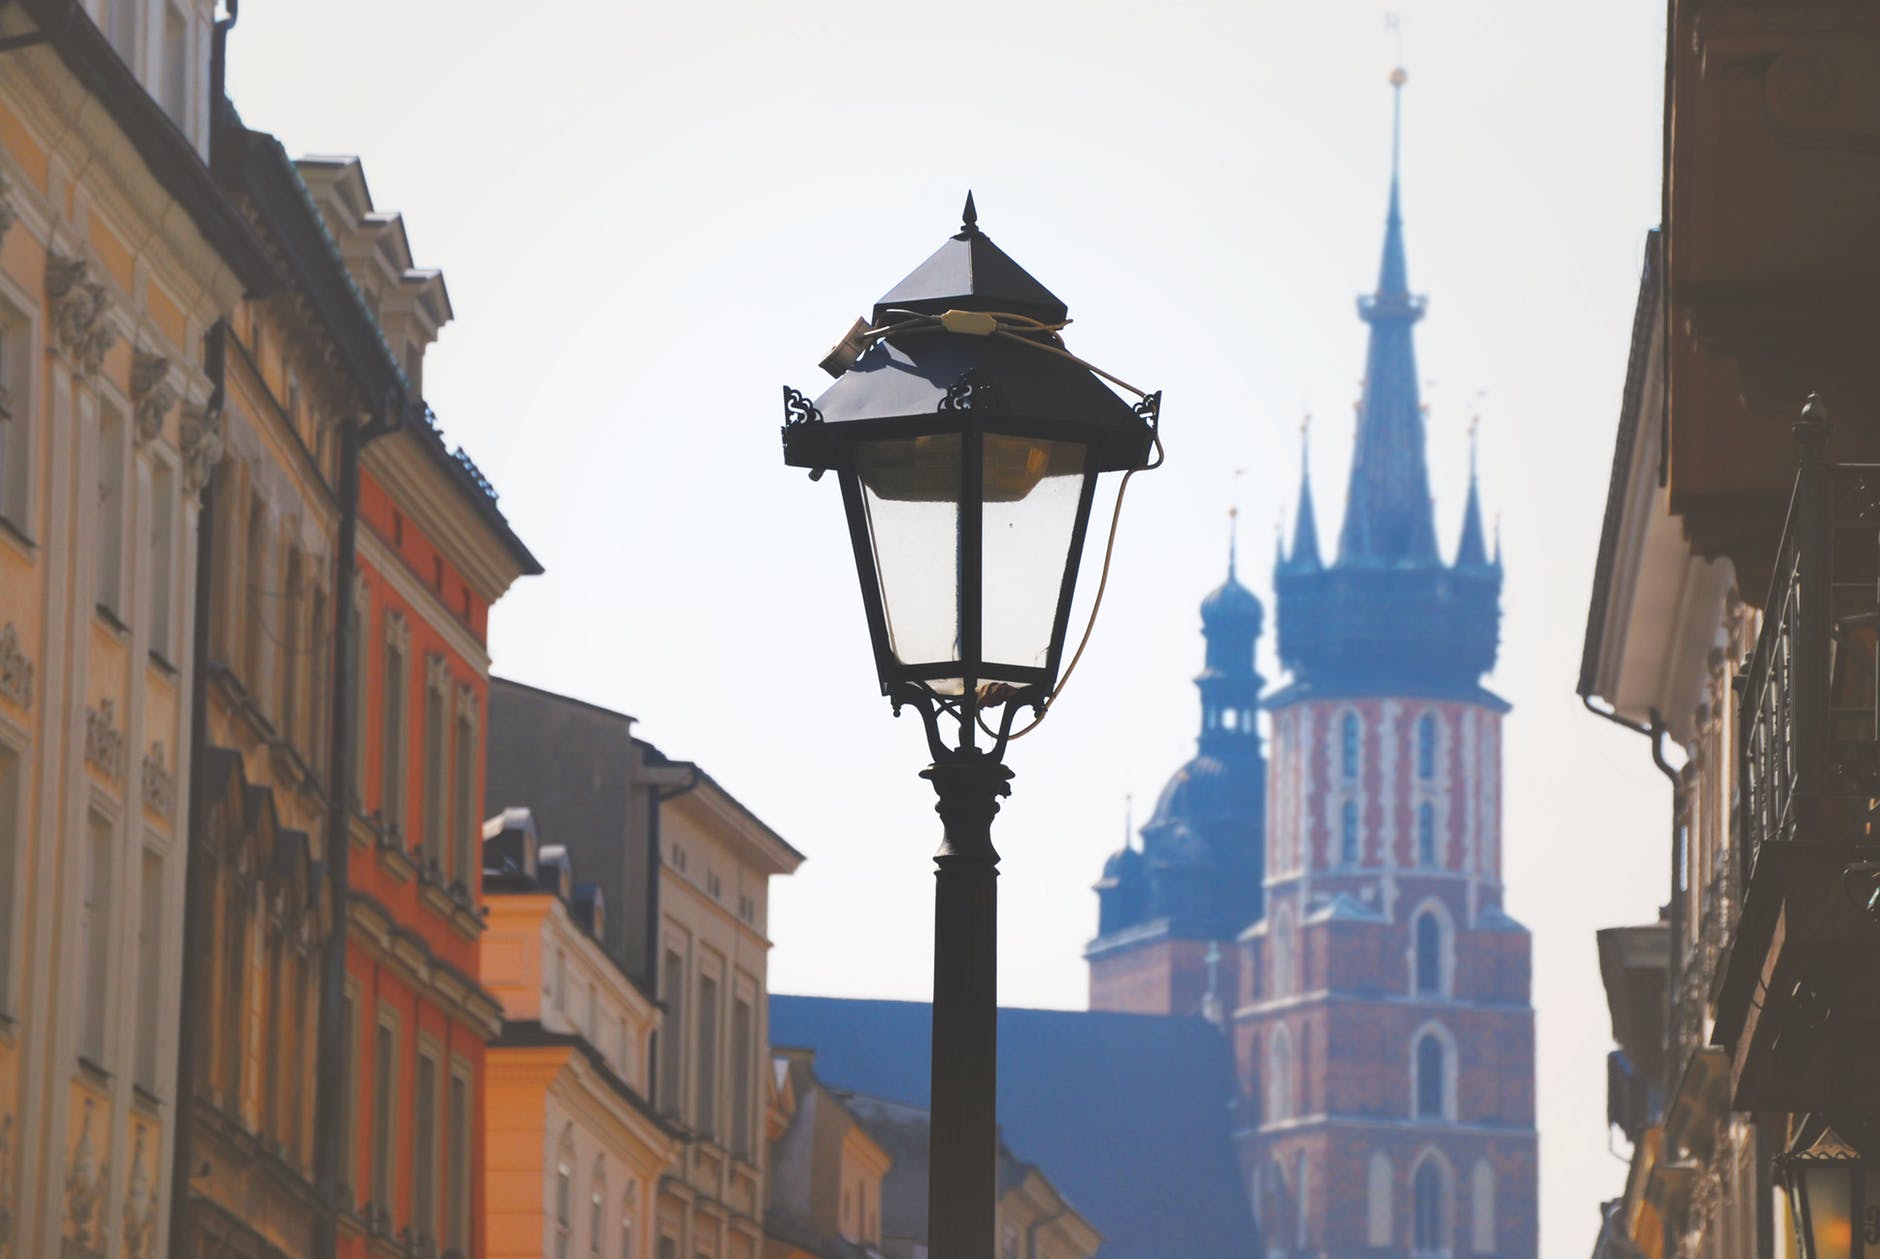 Co zwiedzić w Krakowie?